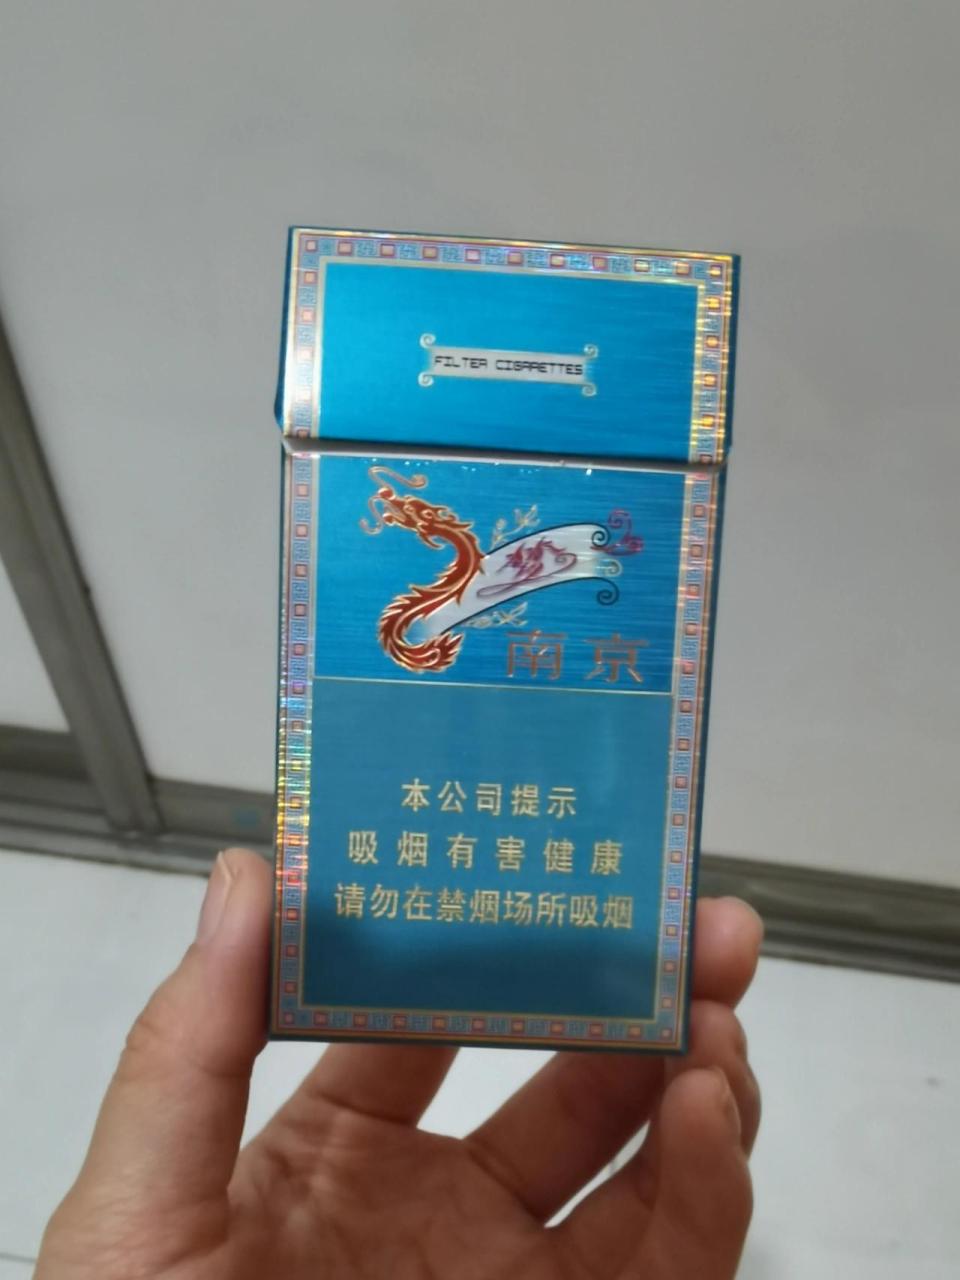 烟照片真实 南京图片